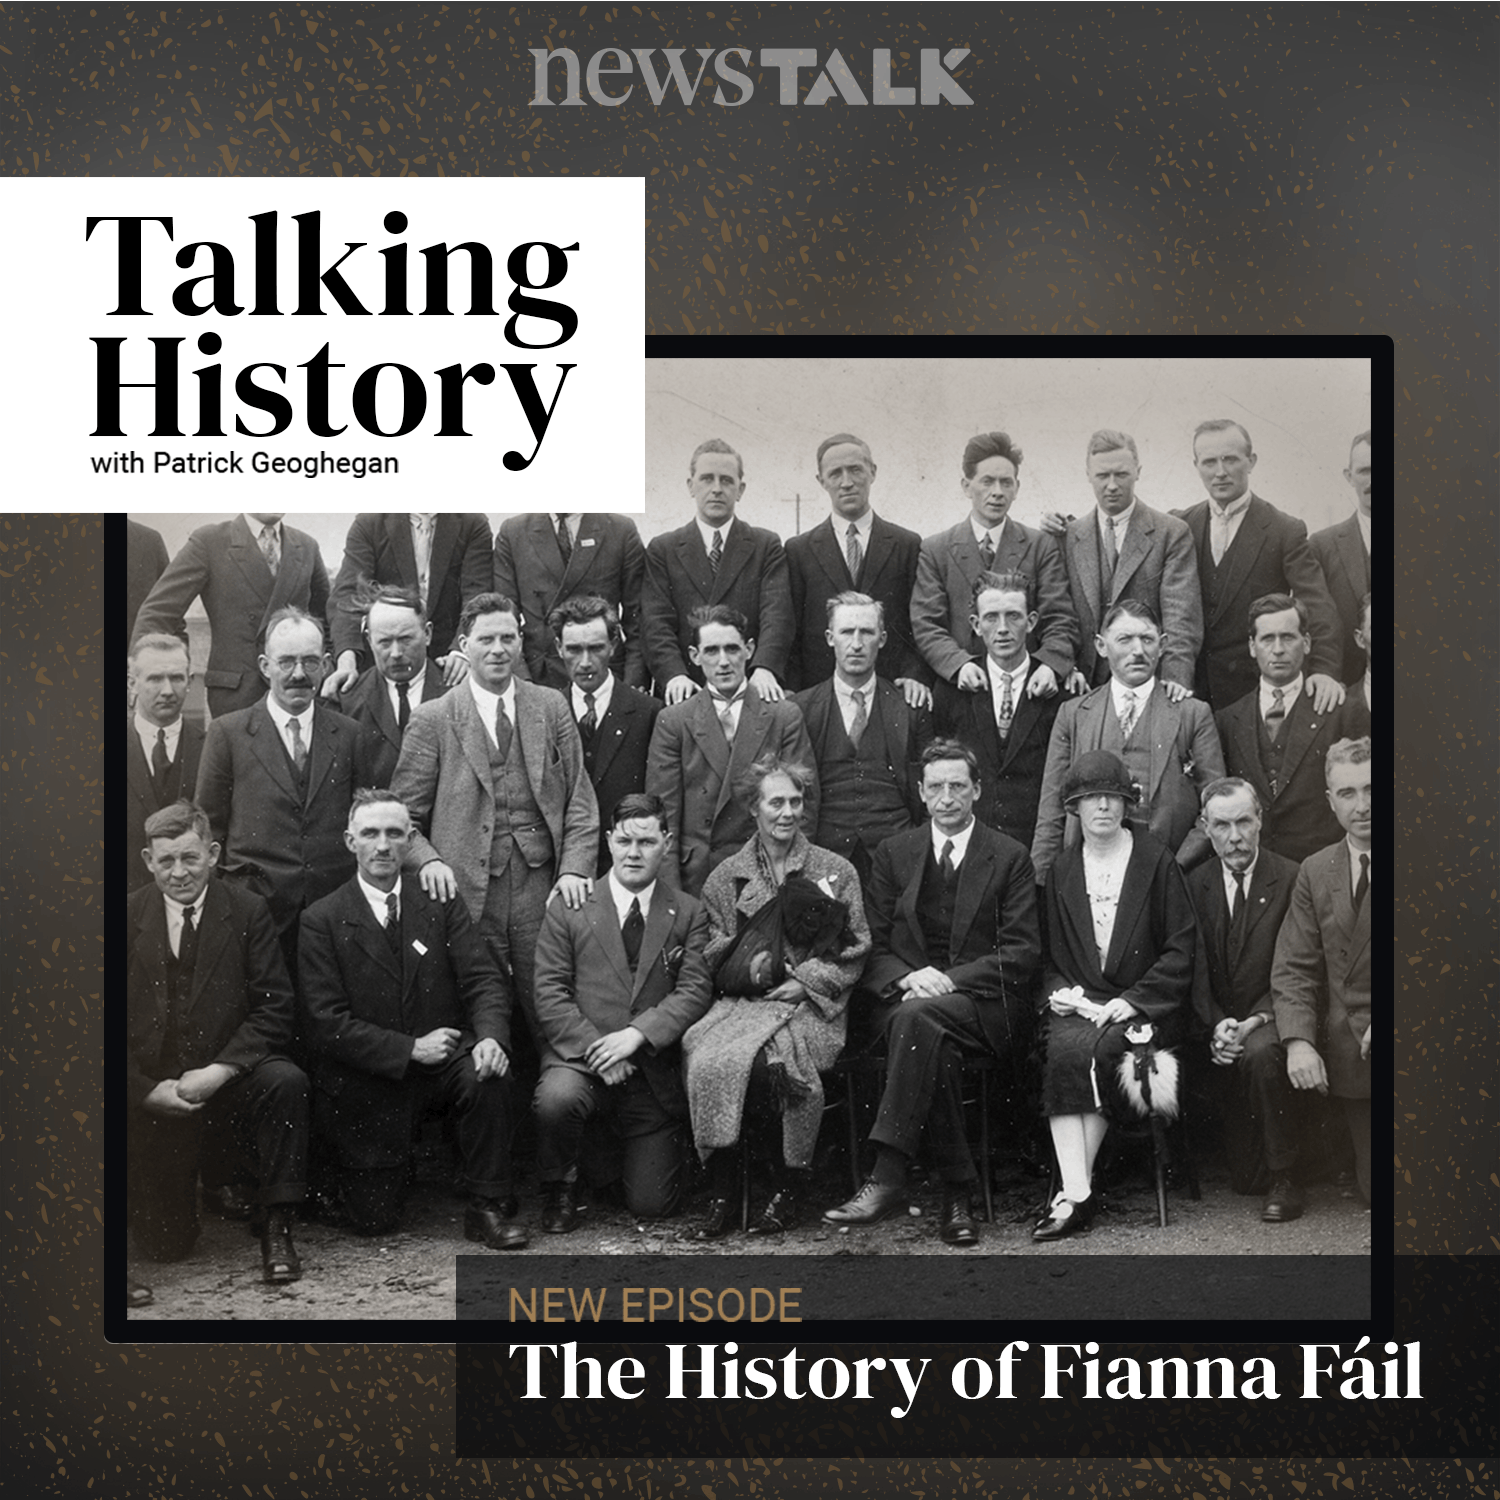 The History of Fianna Fáil